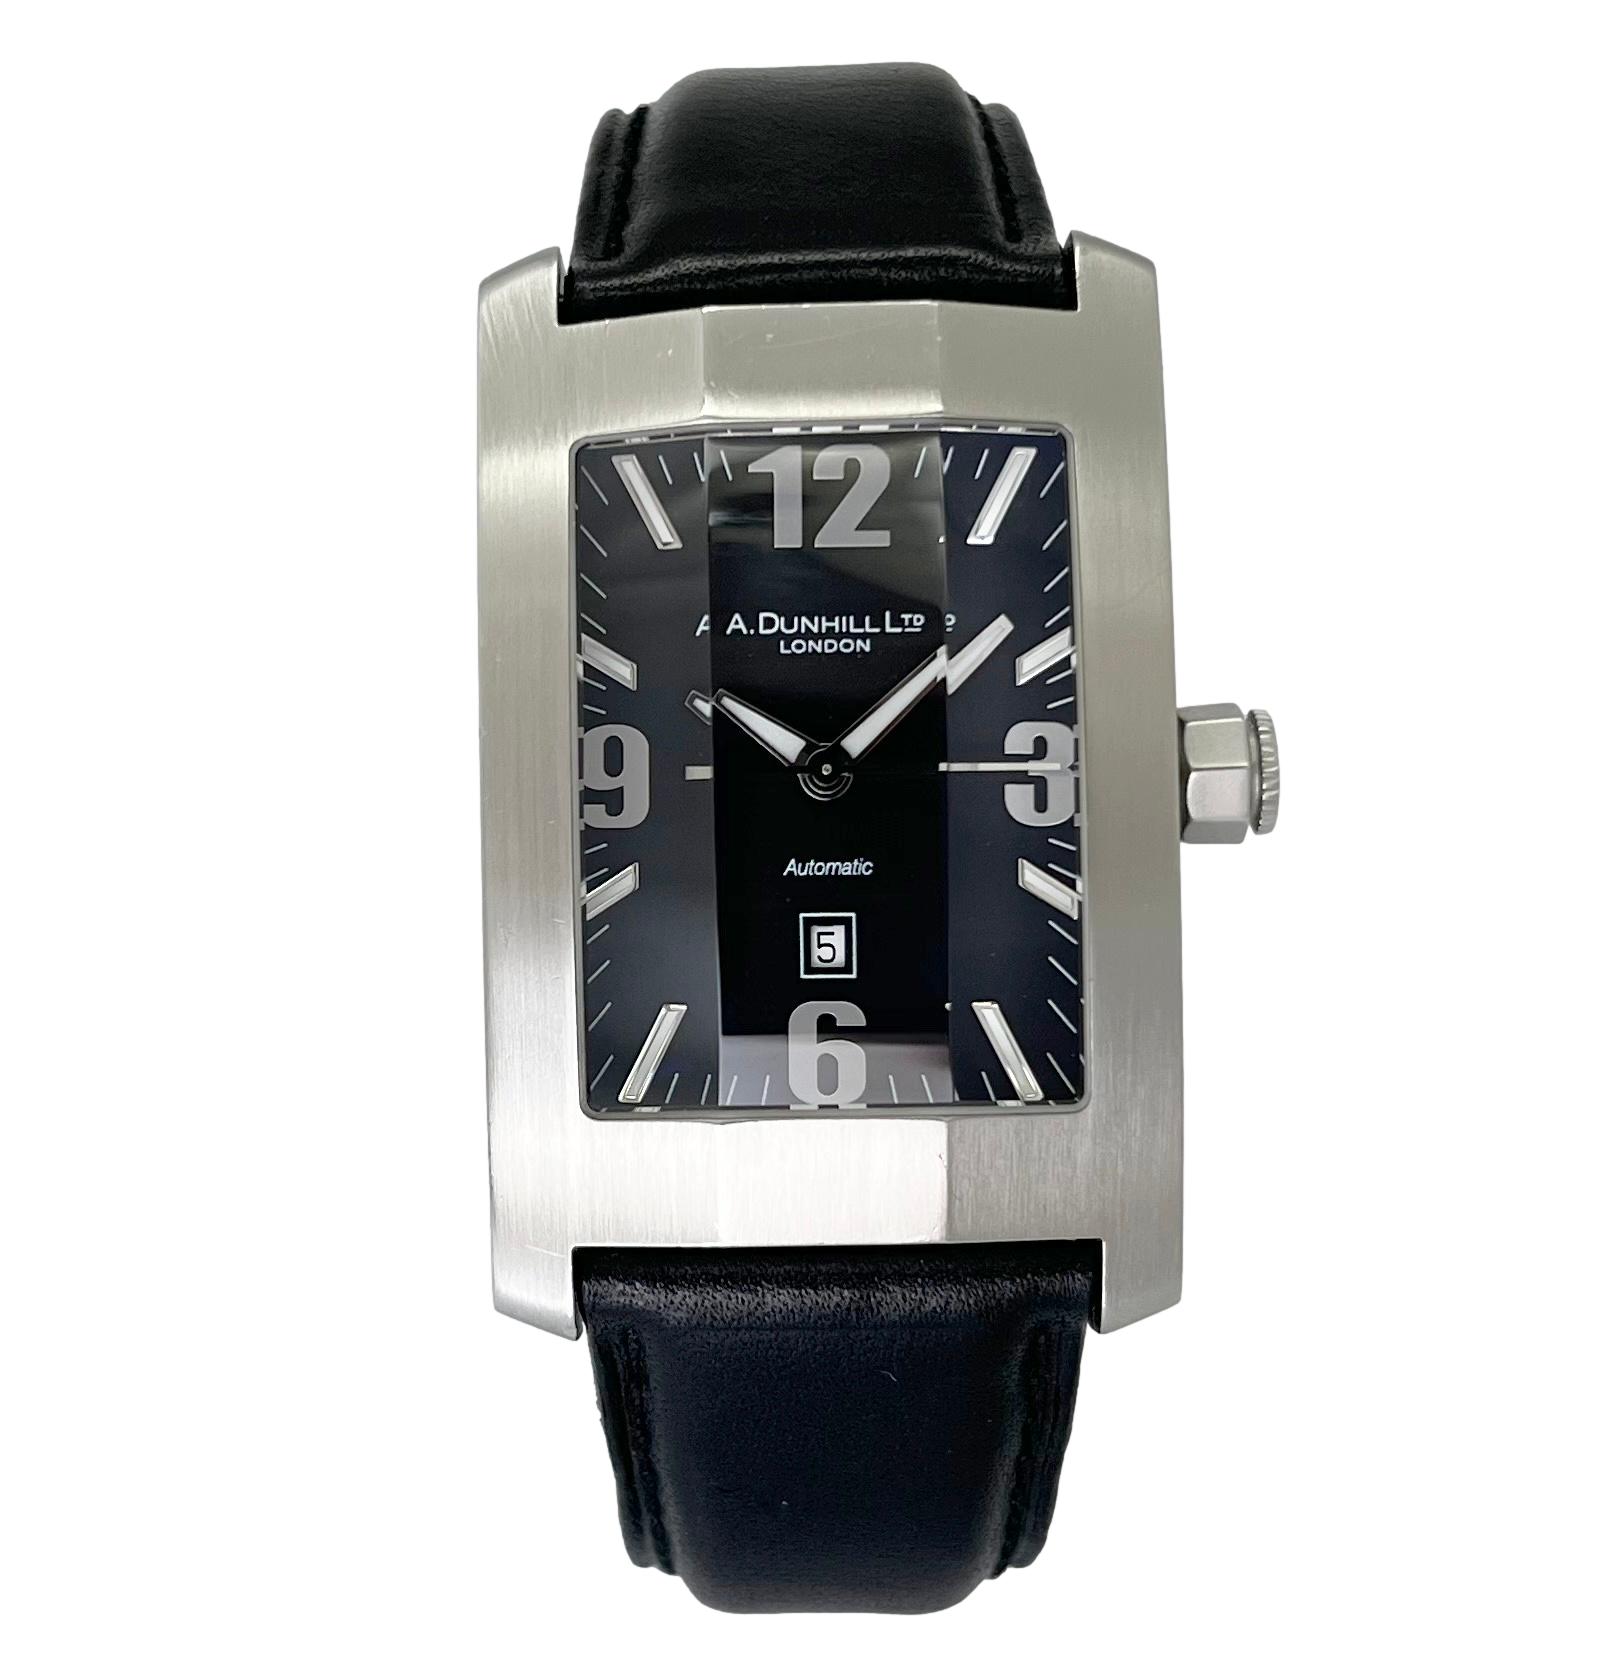 ダンヒル ダンヒリオン 8040 中古 メンズ腕時計 自動巻き ブラック 